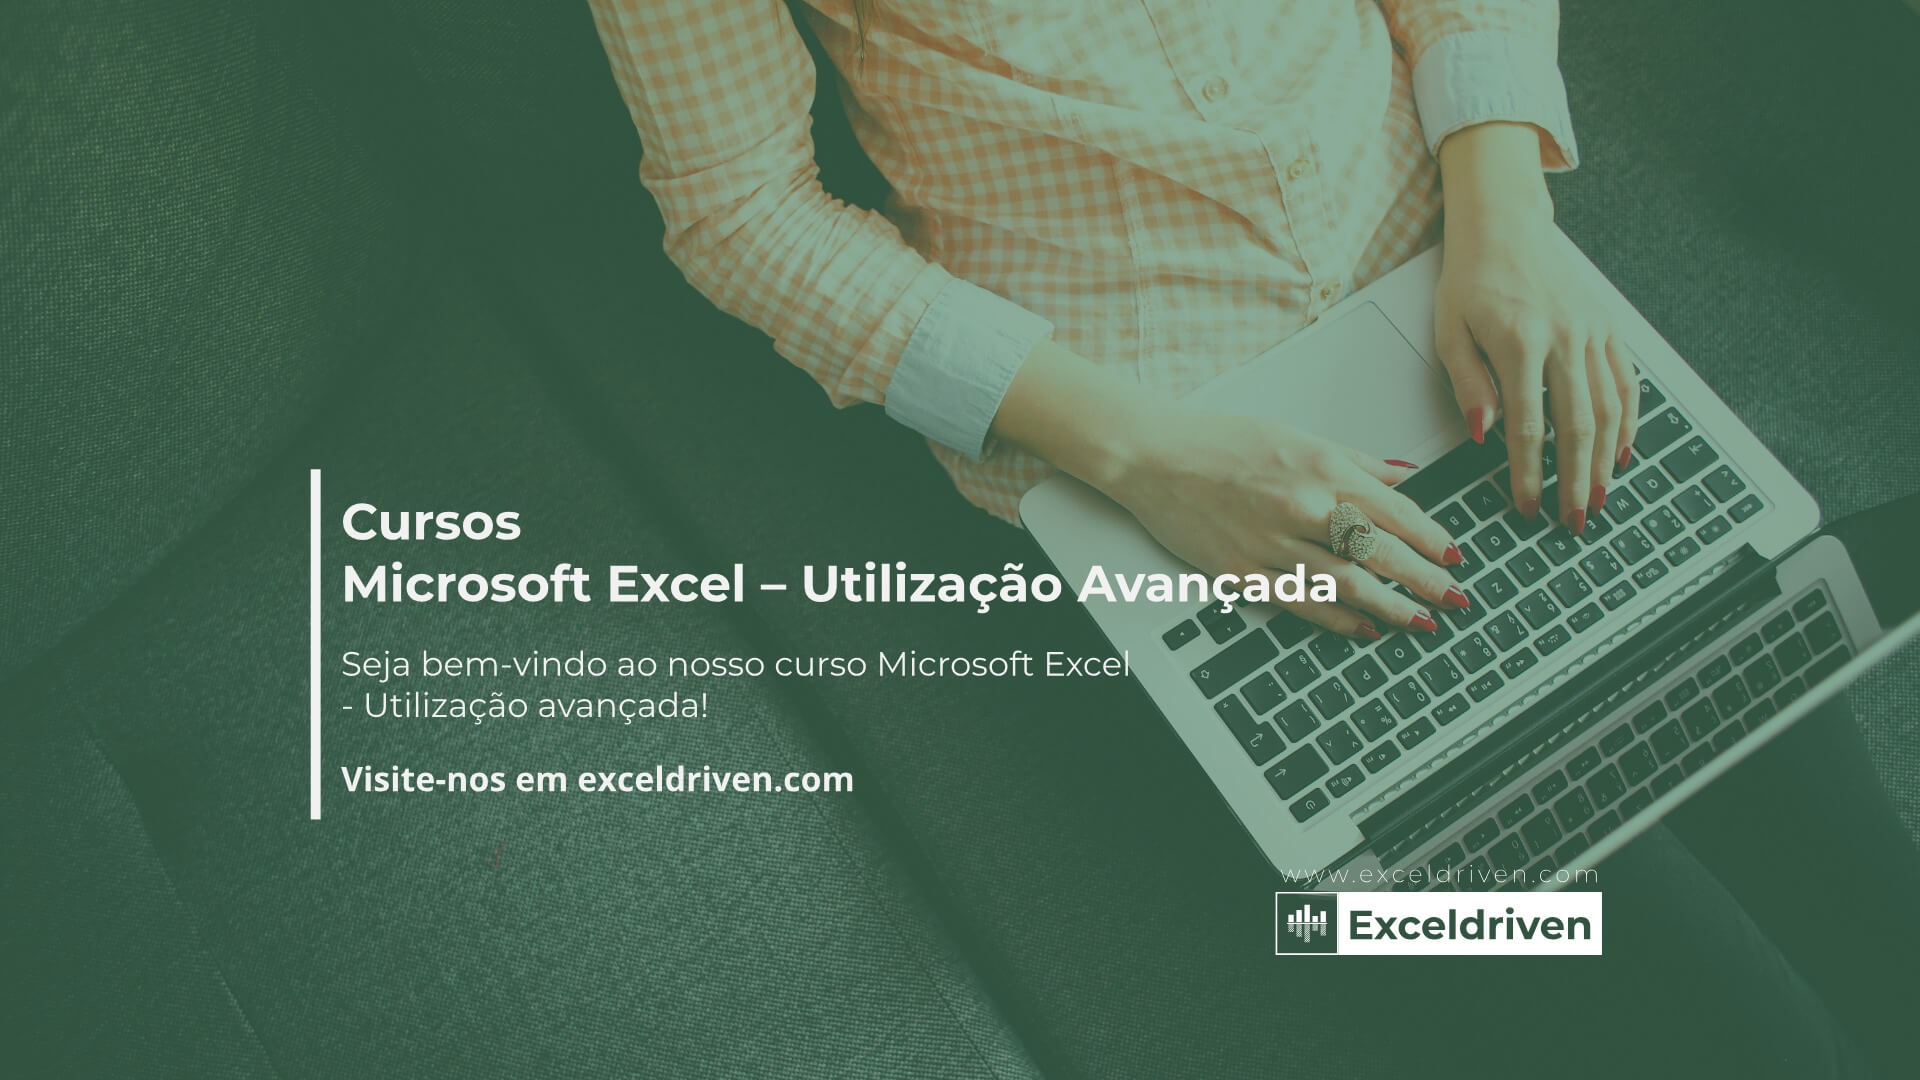 Microsoft Excel – Utilização Avançada